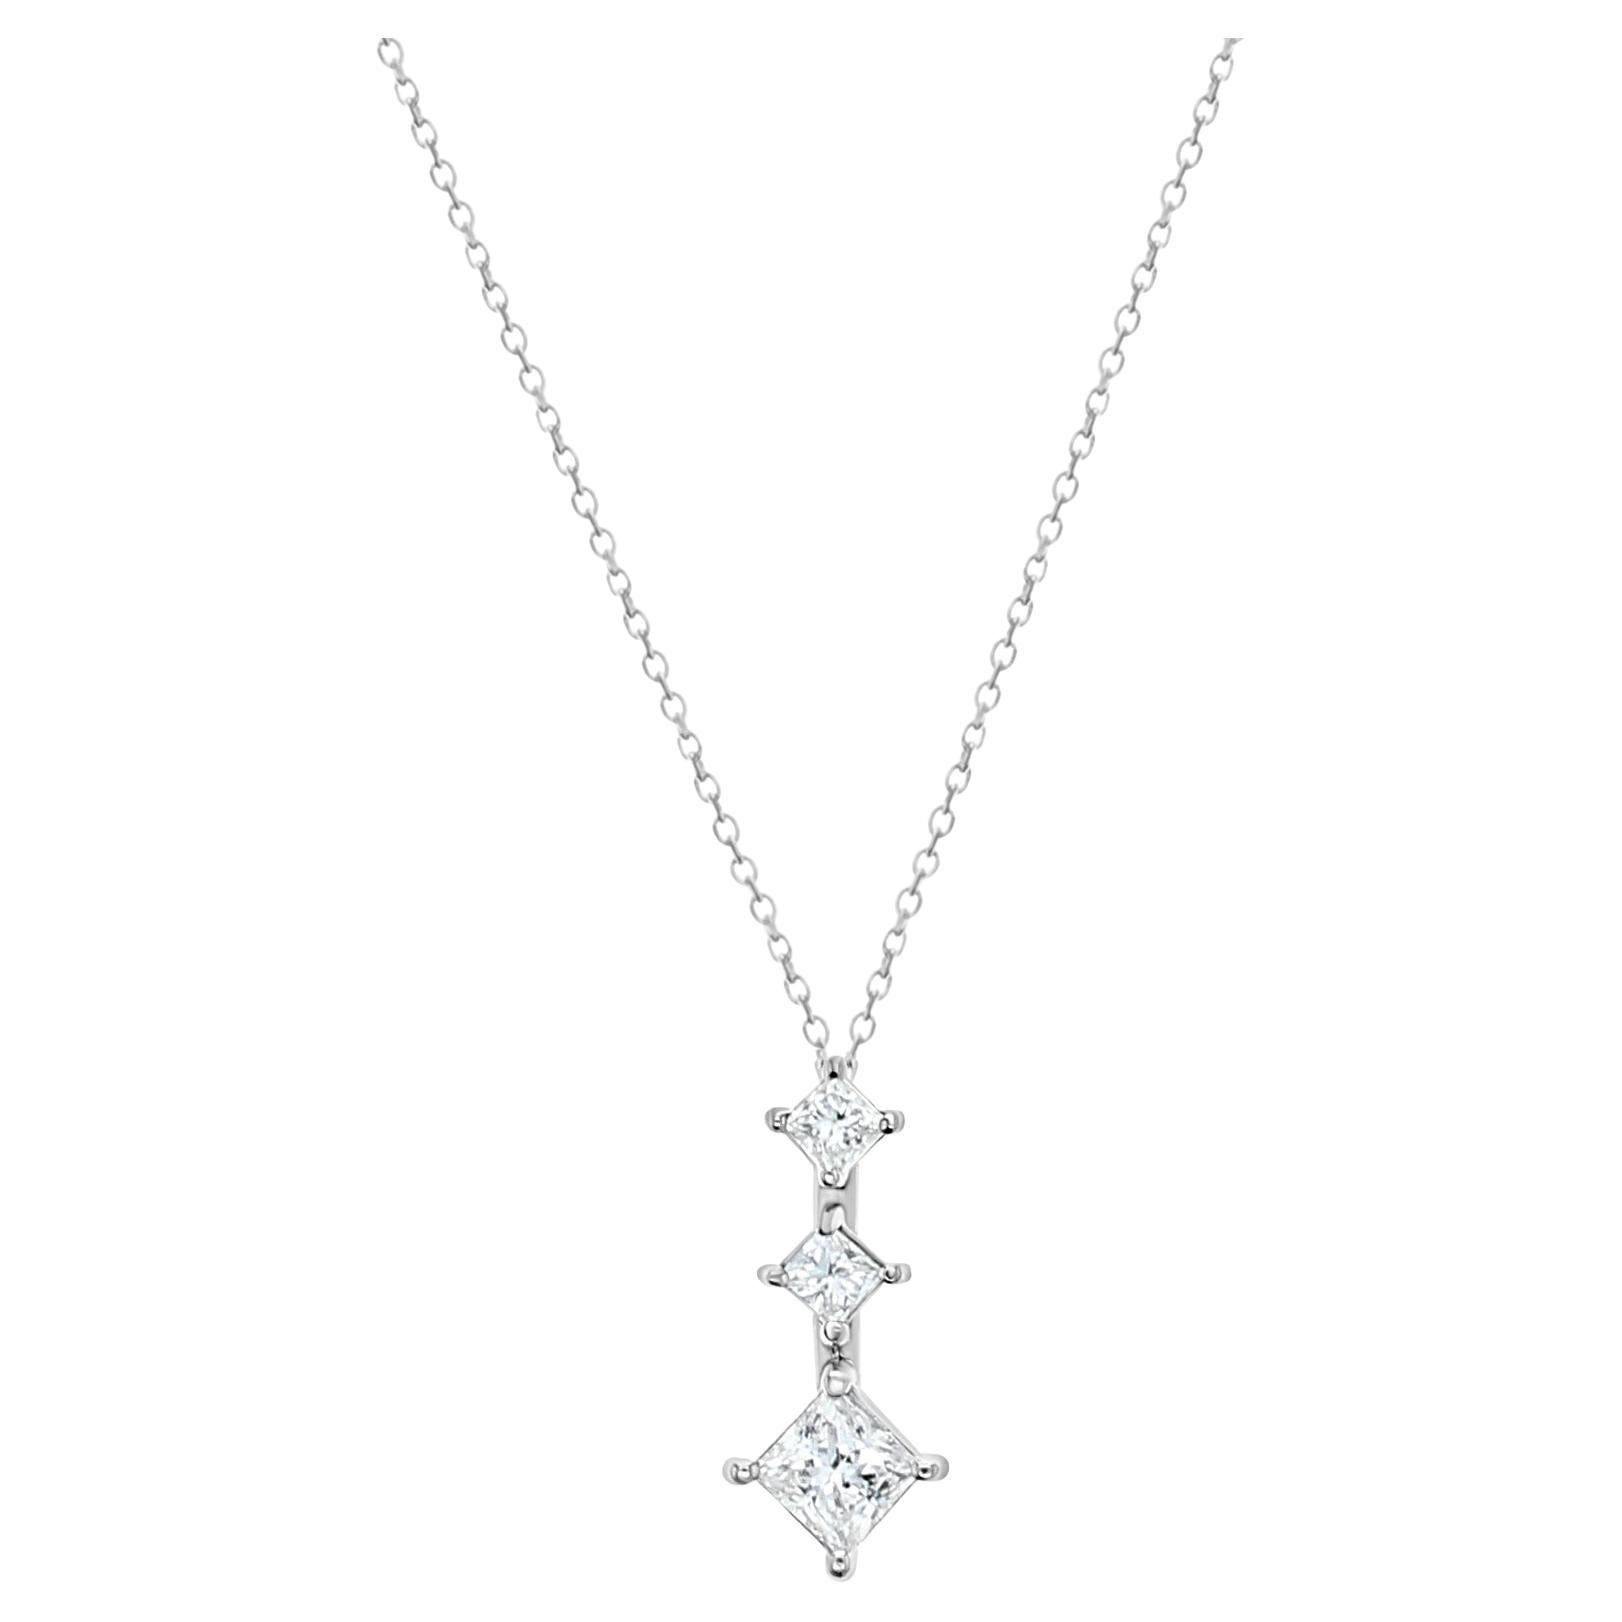 Halskette mit Diamanten im Prinzessinnenschliff in Past, Present, Future 1,29cttw - 14k Weißgold im Angebot